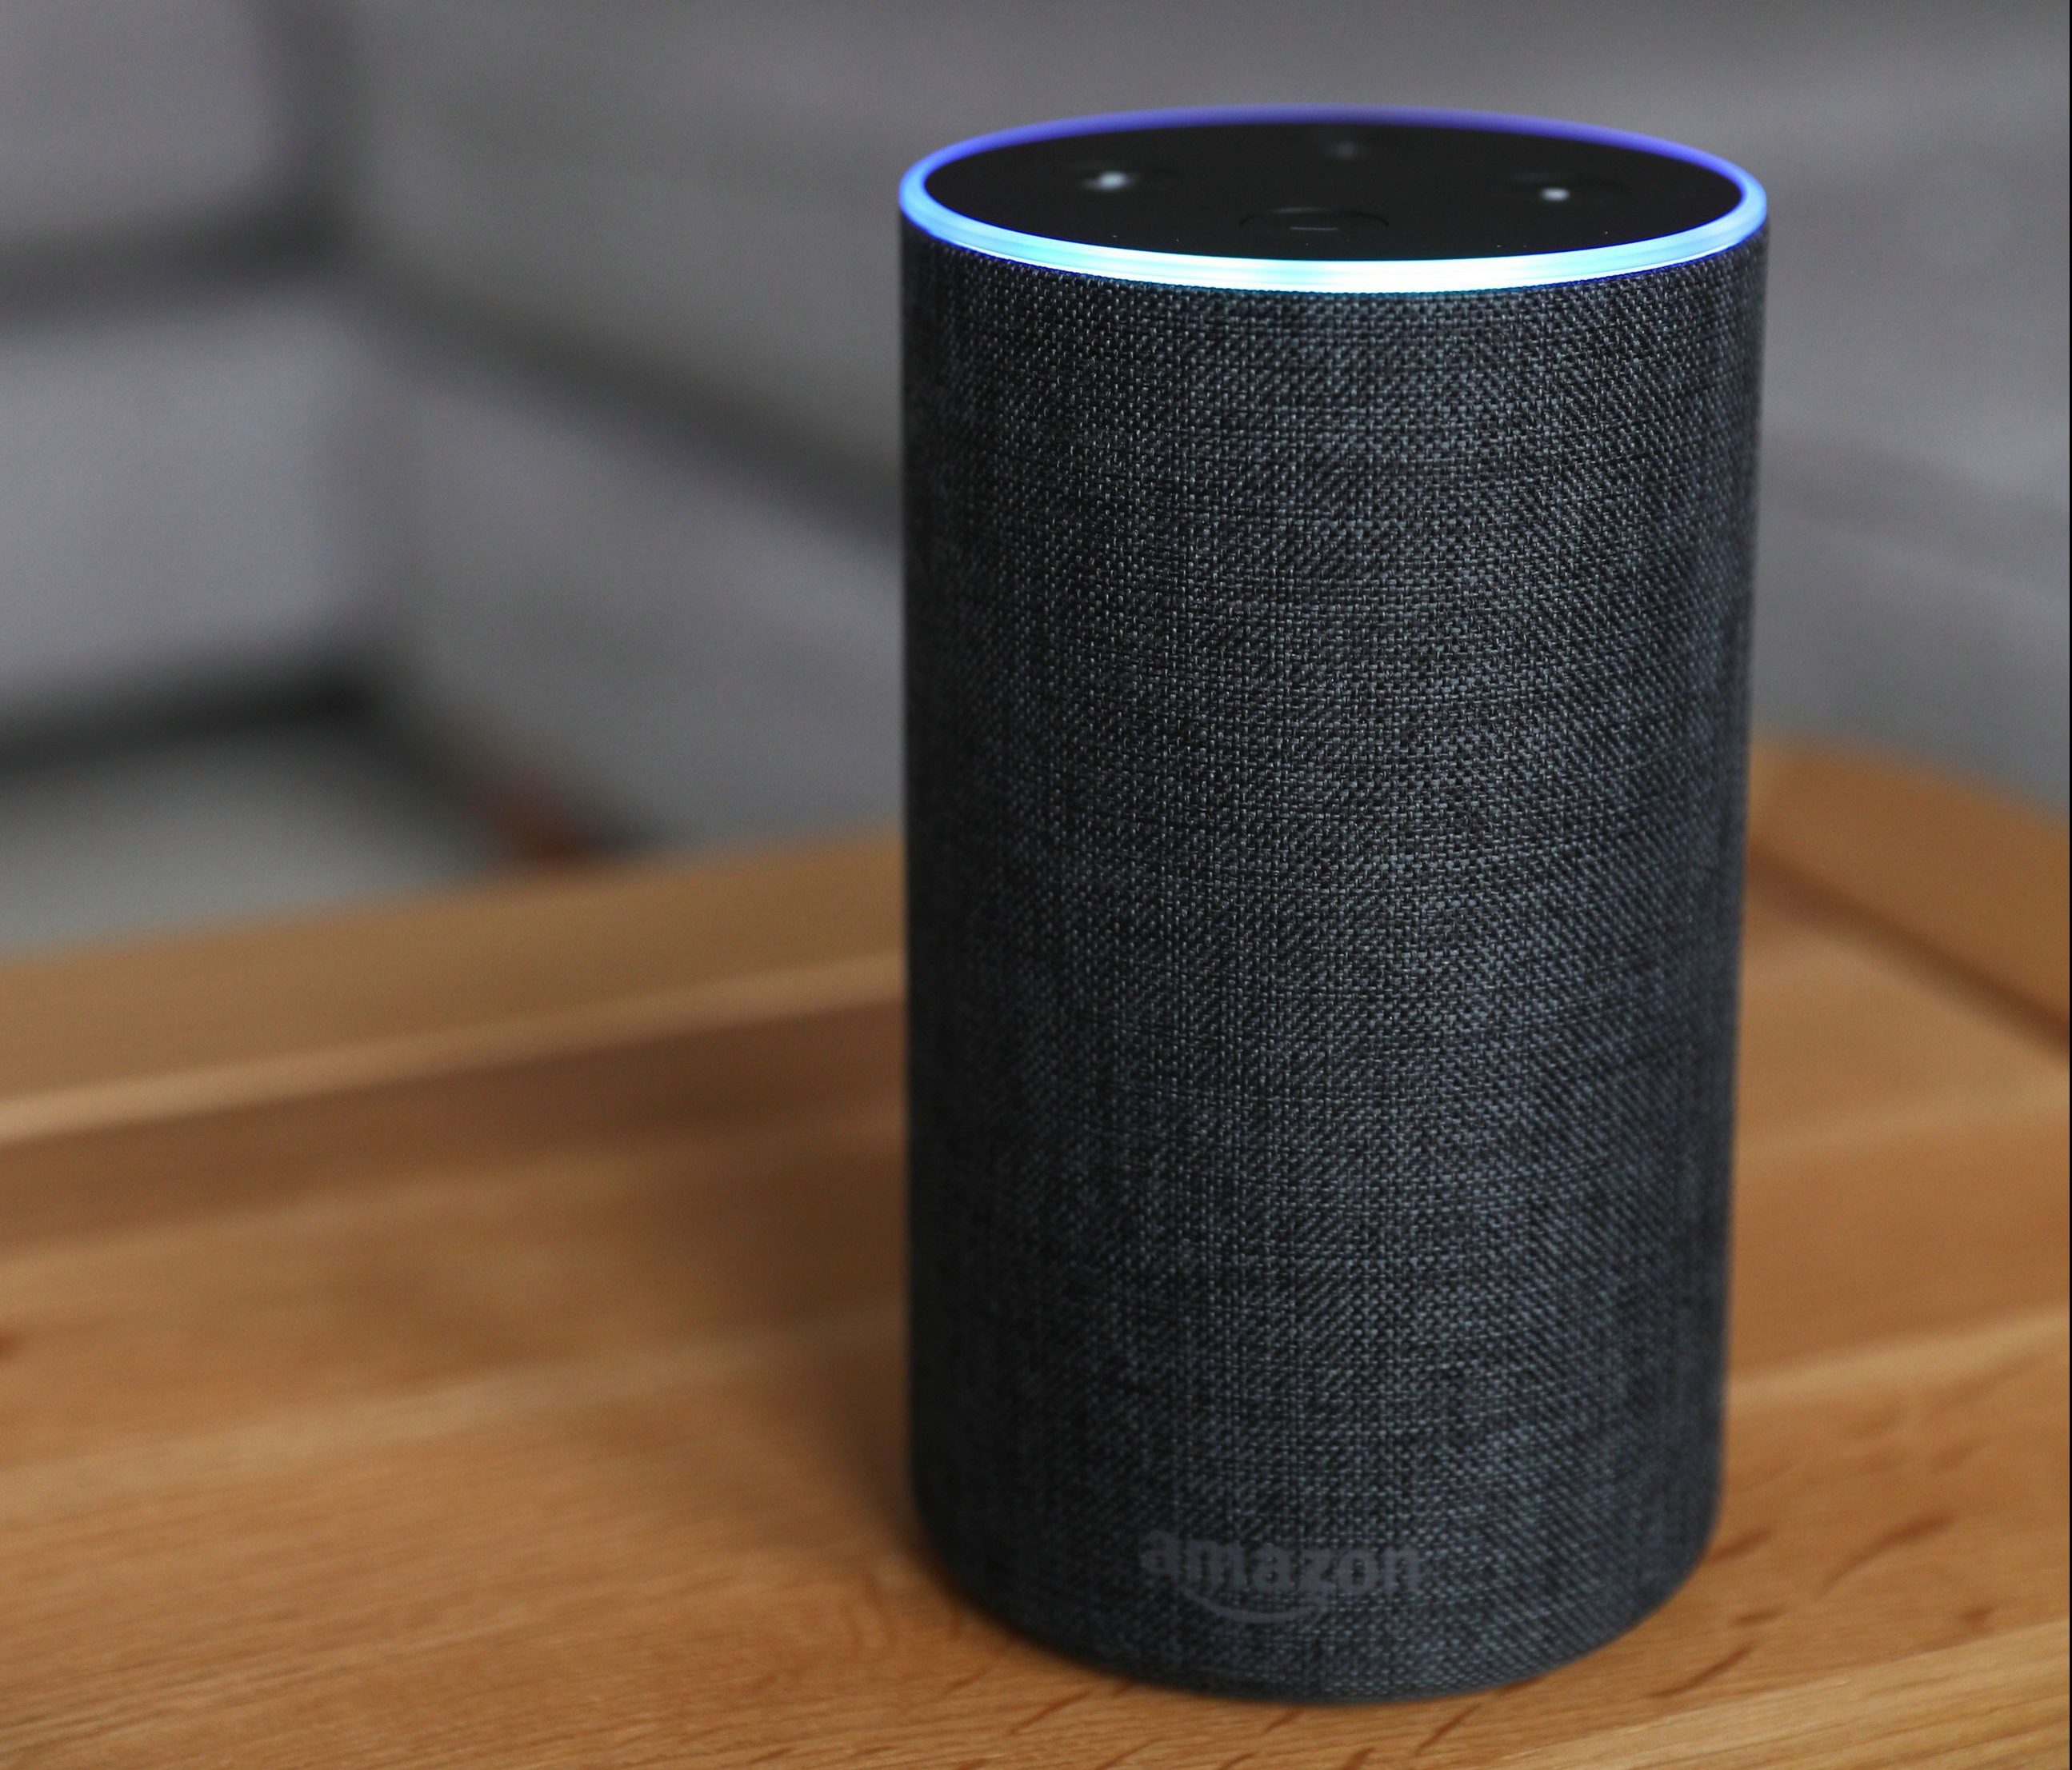     Trợ lý ảo kích hoạt bằng giọng nói của Amazon trả lời 'Alexa'